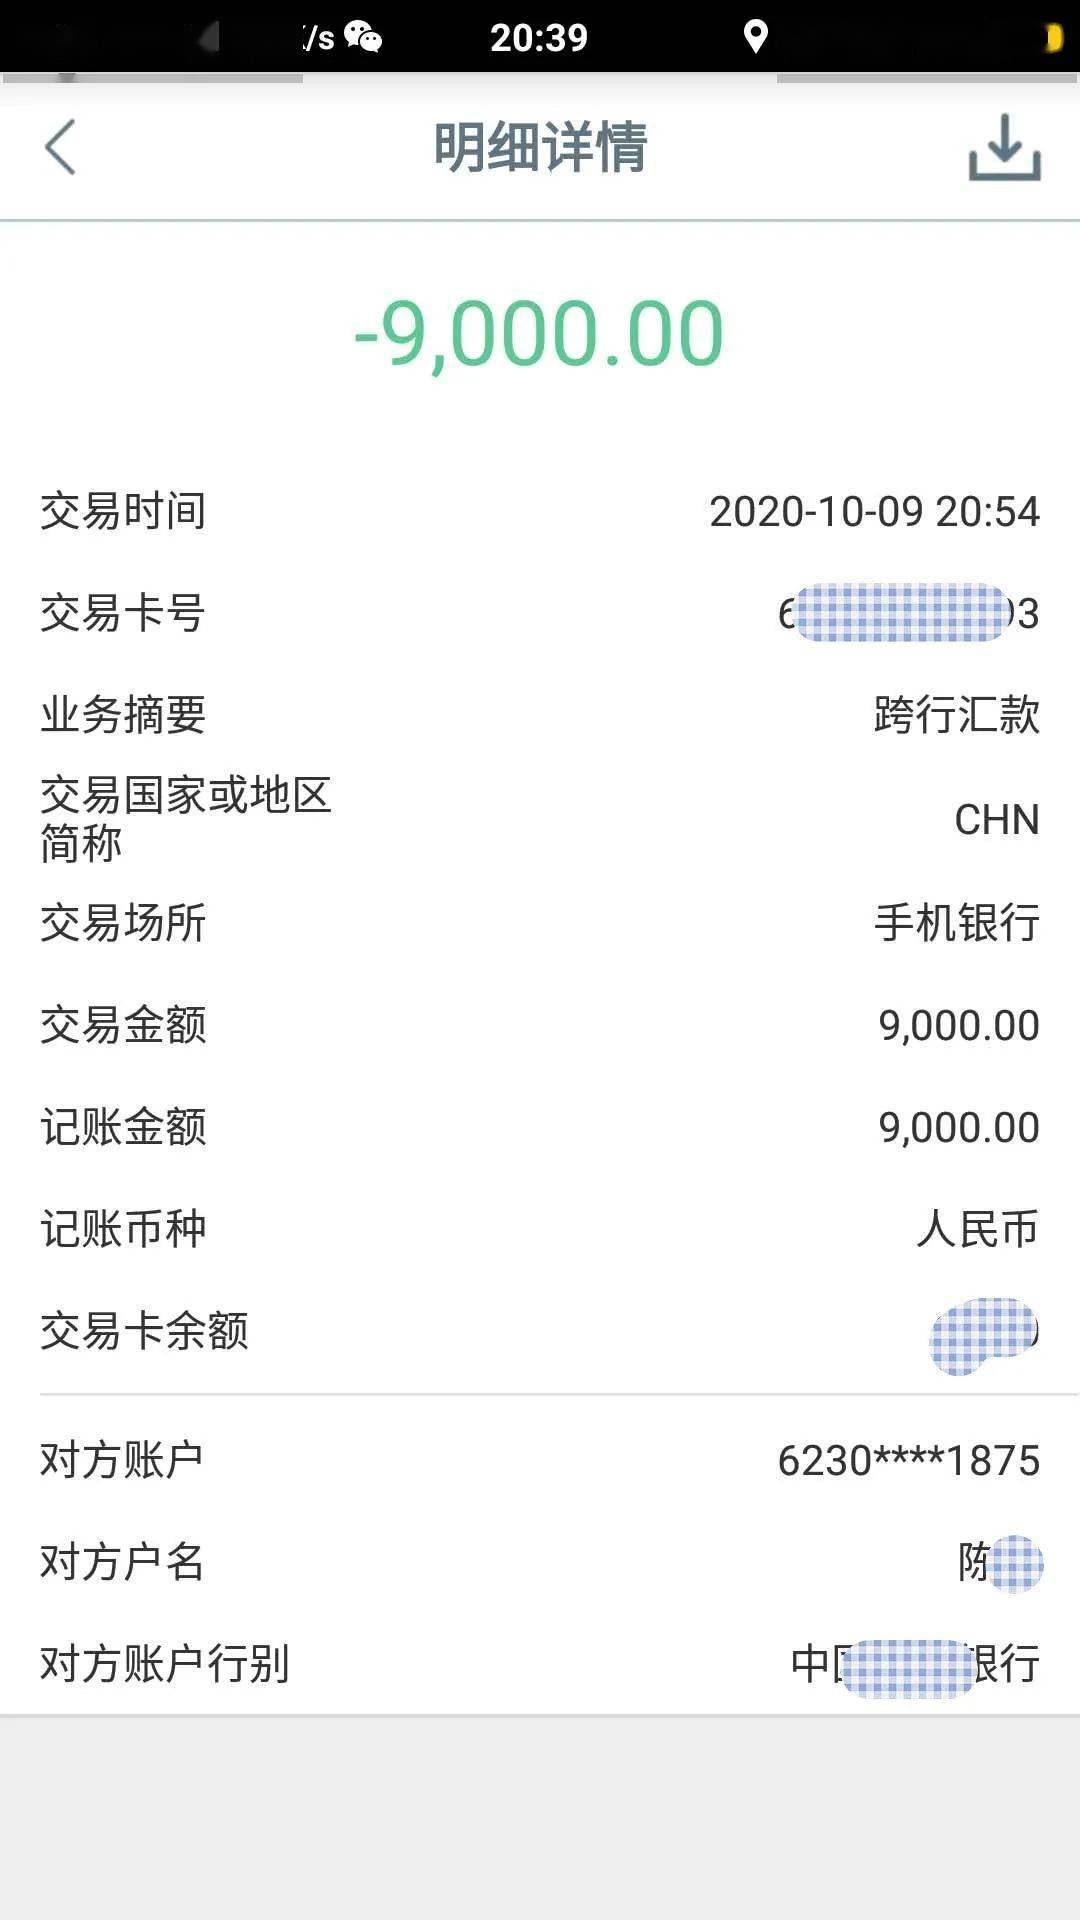 在赵女士转了9000元后,"小廖"仍多次以"转账时间超时","转账没有备注